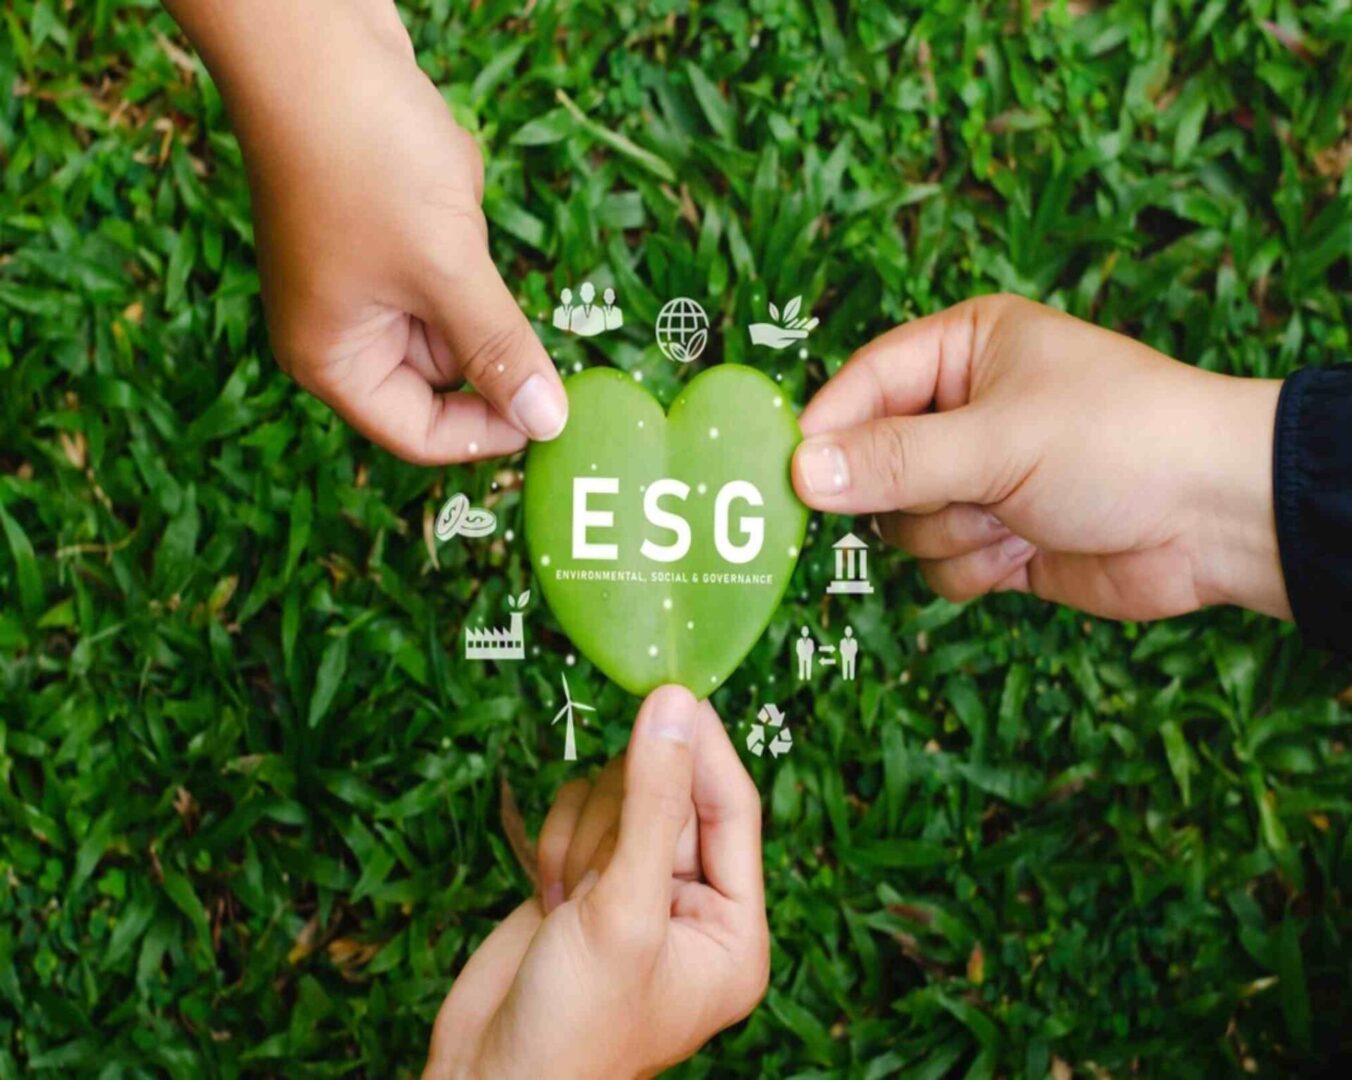 ESG solutions